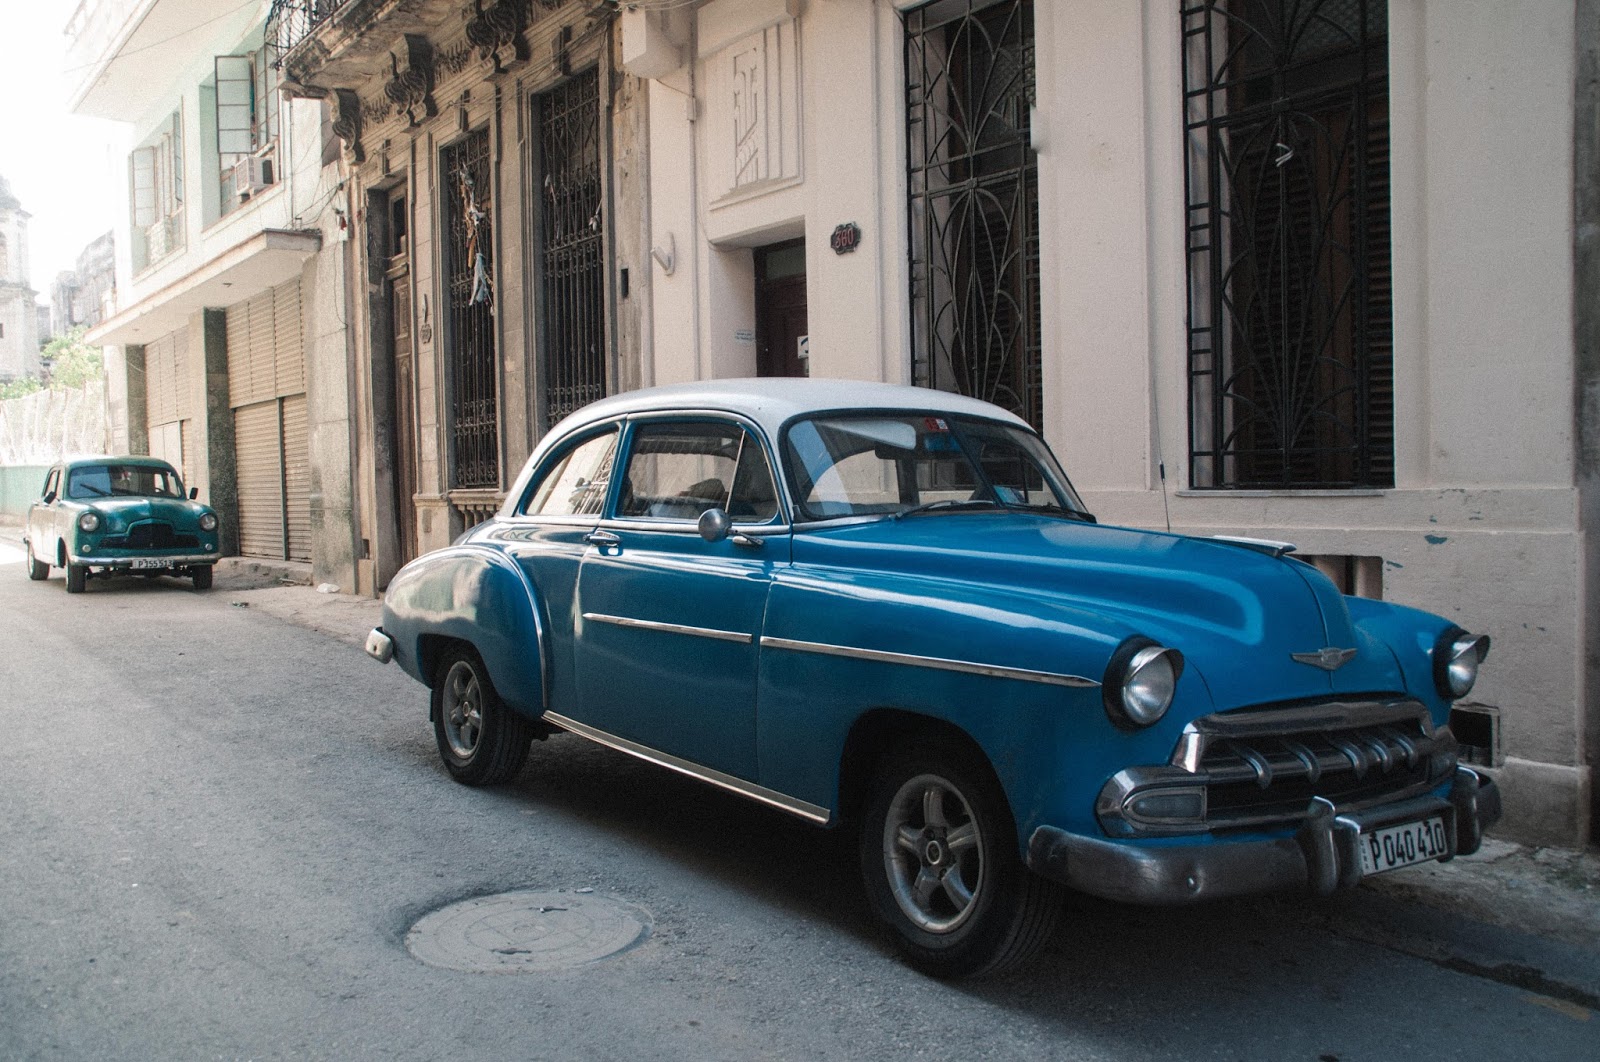 Cuba La Habana